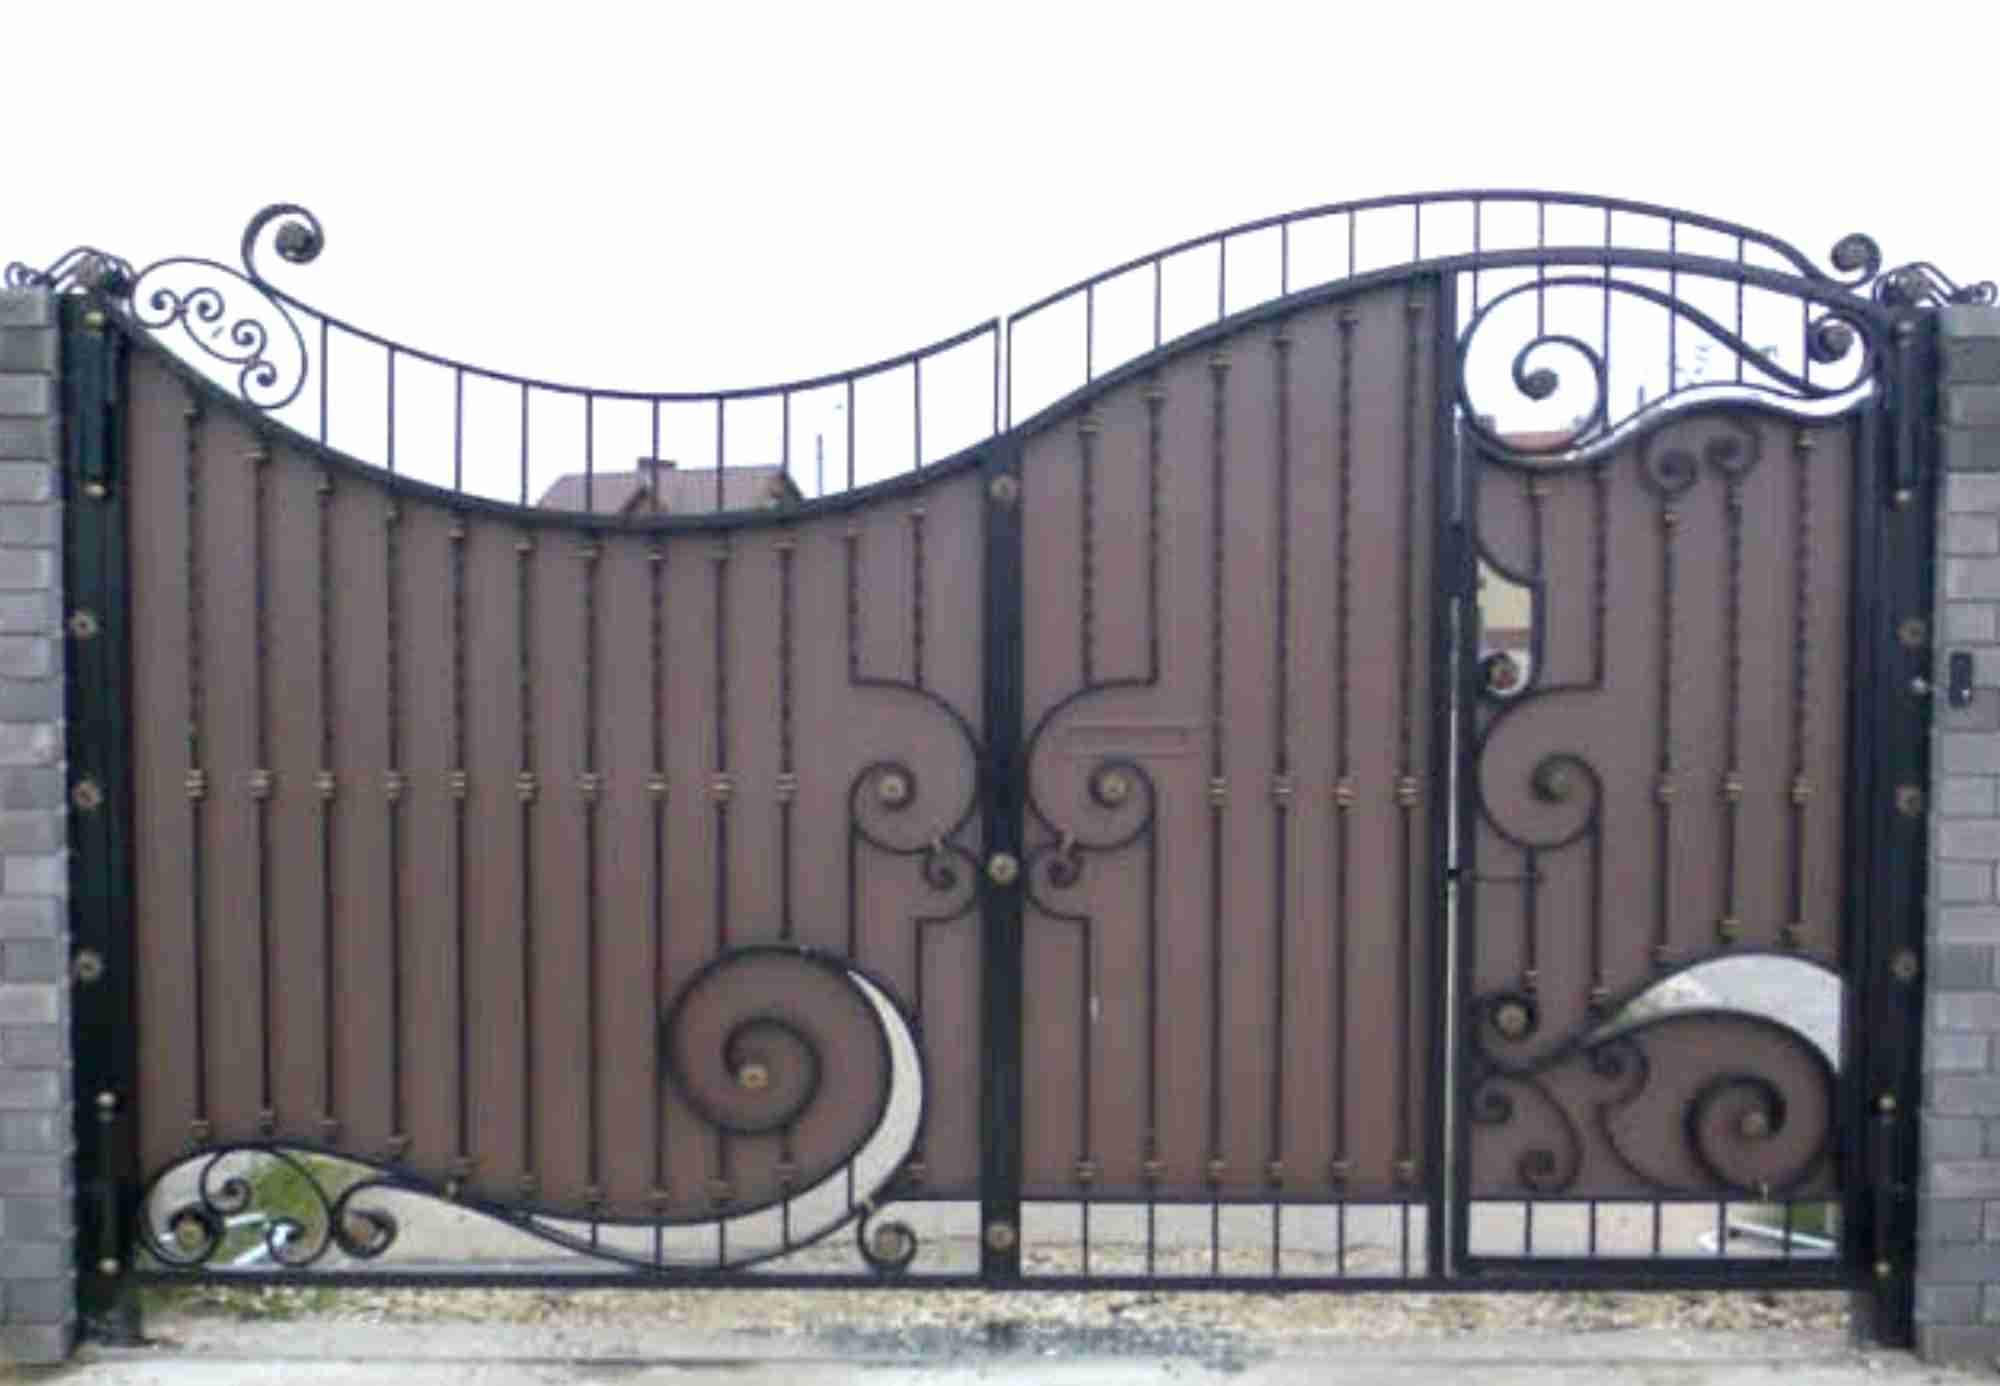 Фото калитка в воротах: Журнал о дизайне интерьеров и ремонте Идеи вашего дома — IVD.ru